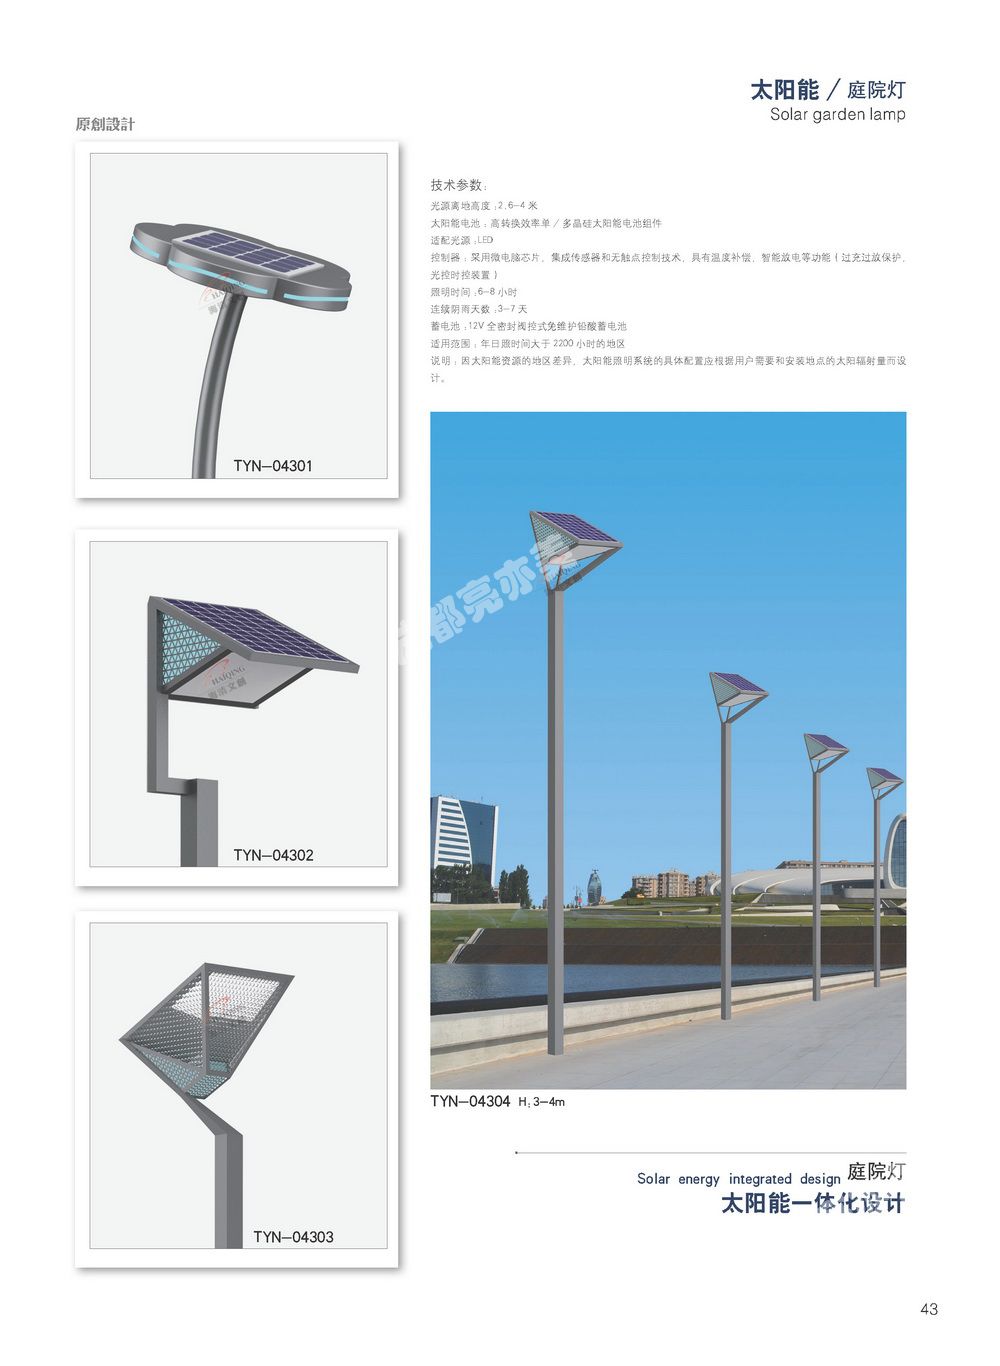 四川省太阳能路灯厂家/太阳能路灯维修生产销售